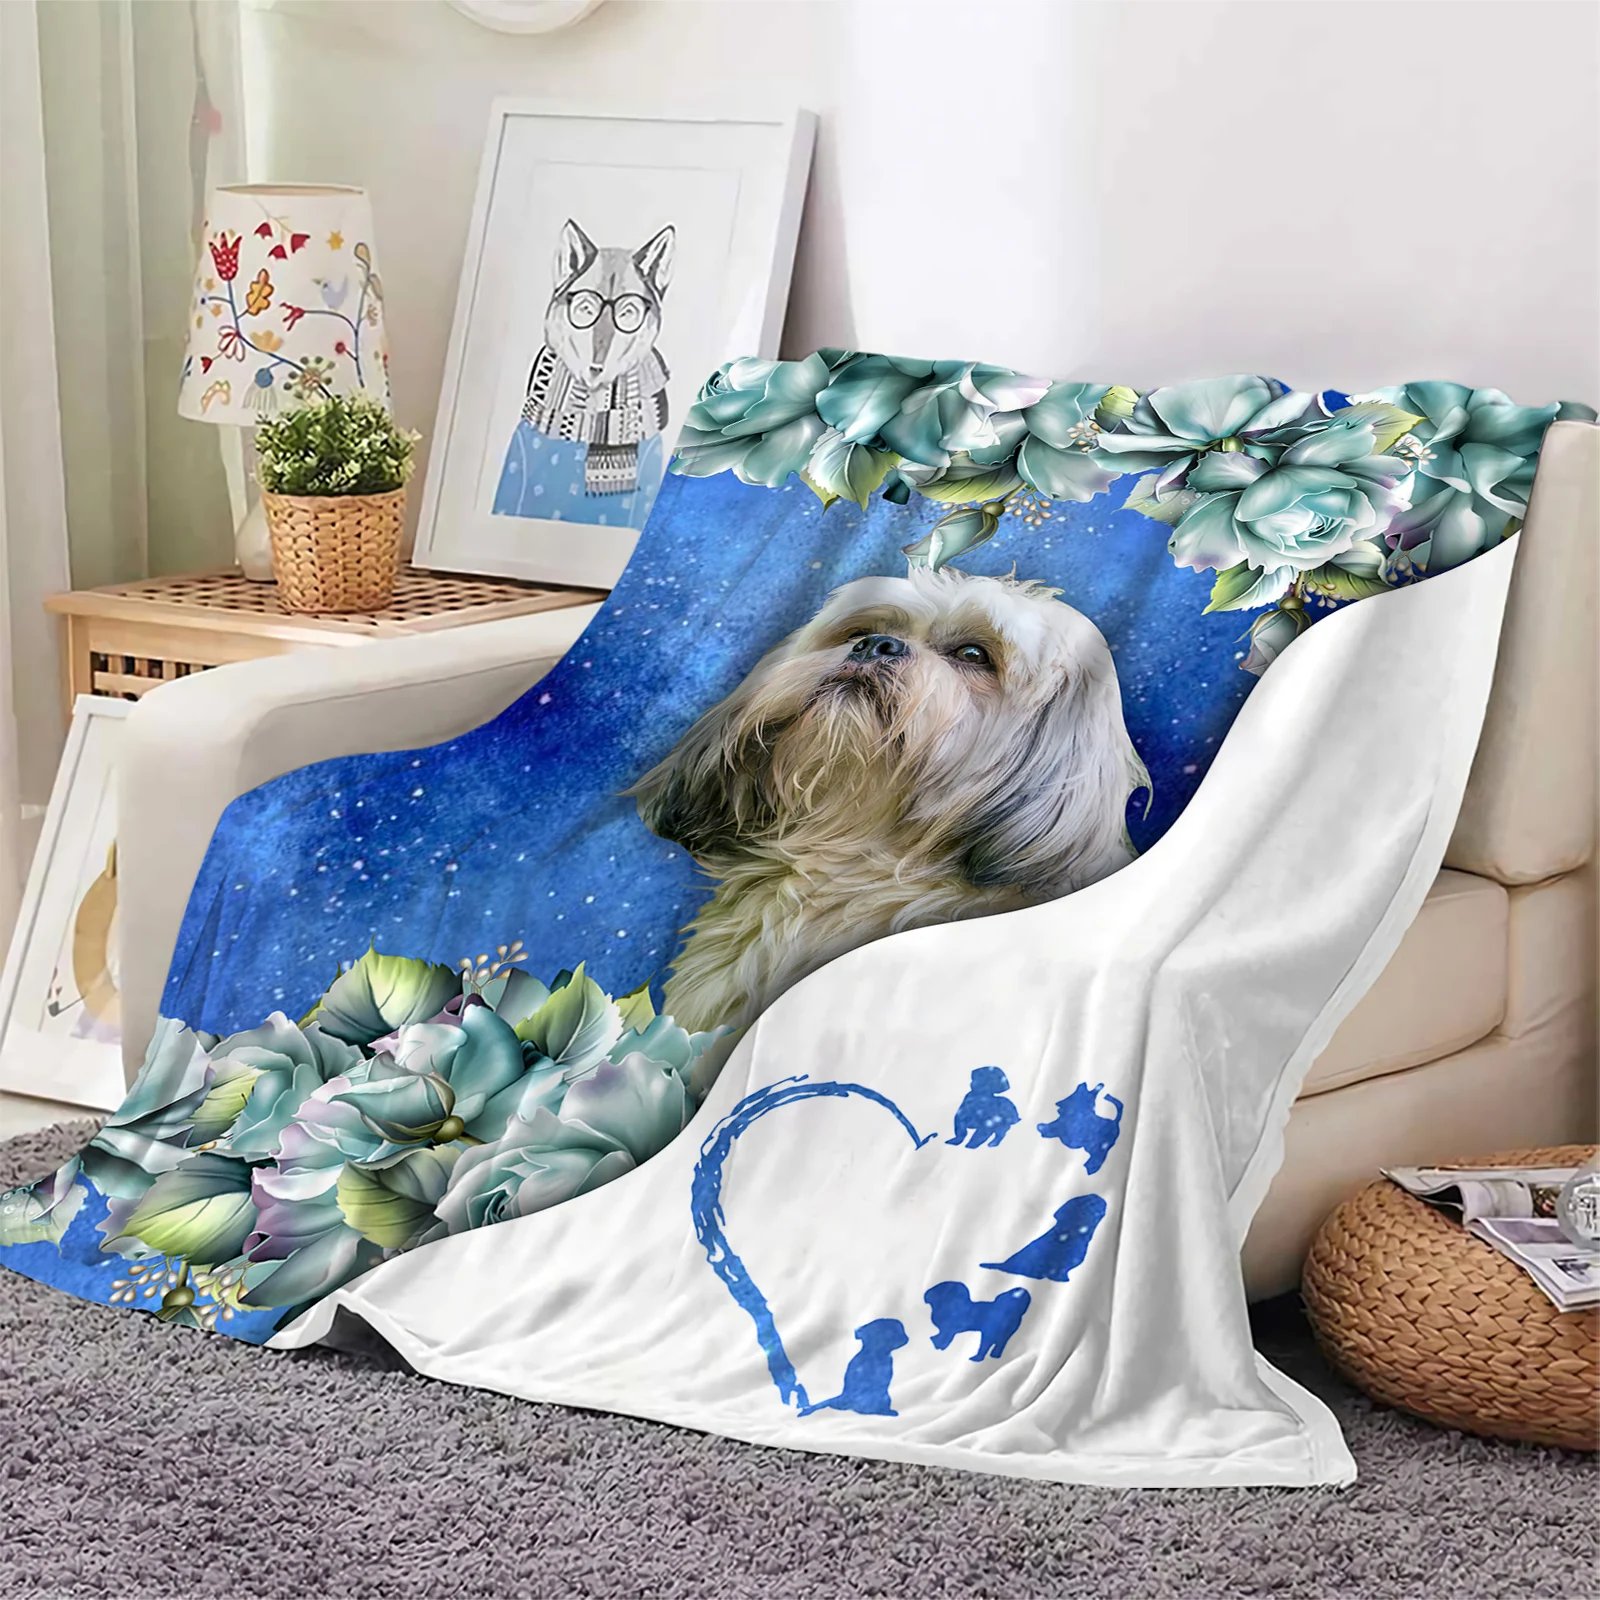 

Фланелевые одеяла Shih Tzu, одеяло с 3D рисунком синих цветов и роз, офисное портативное одеяло для сна и путешествий, Прямая поставка